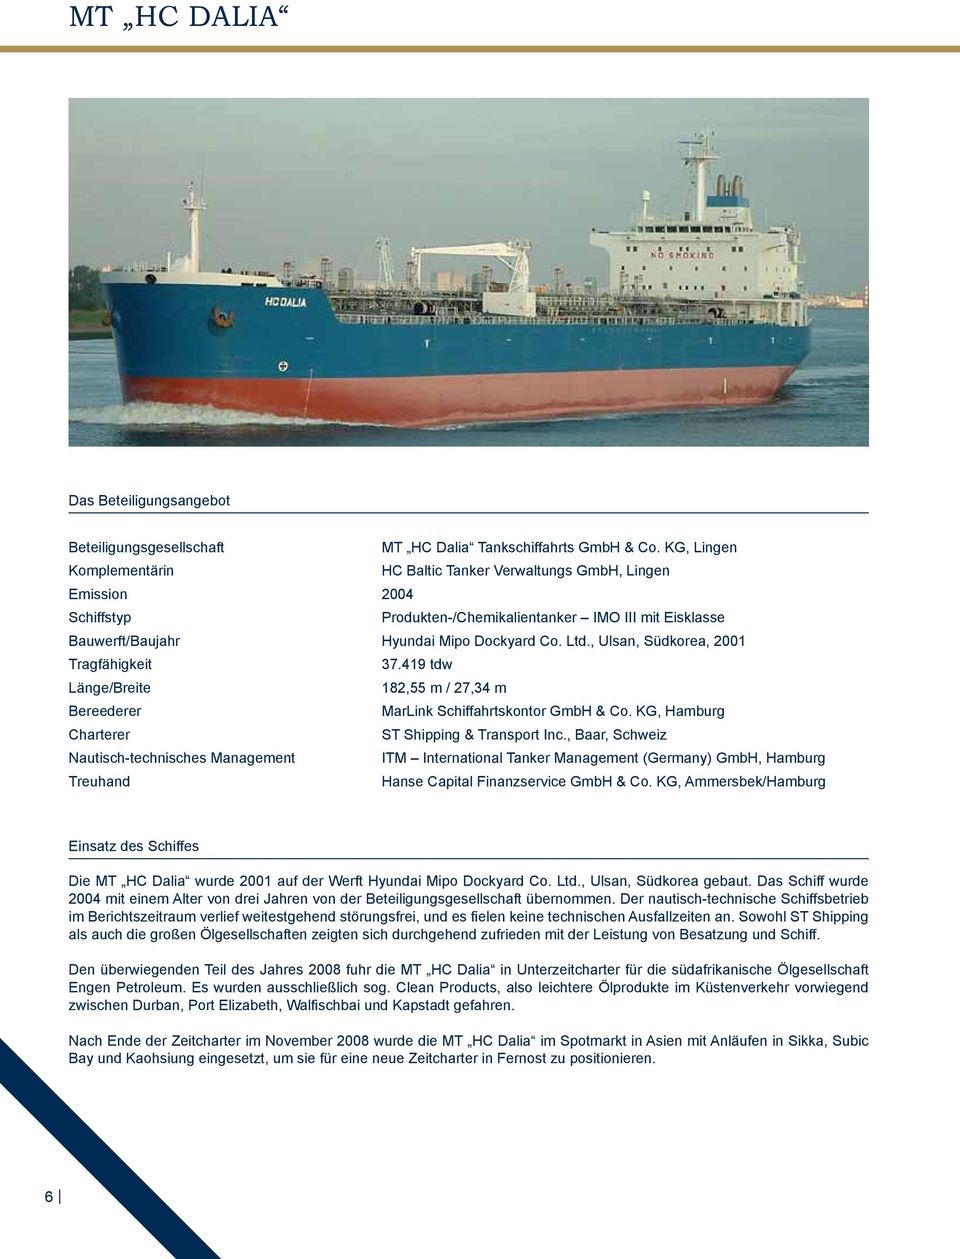 , Ulsan, Südkorea, 2001 Tragfähigkeit 37.419 tdw Länge/Breite 182,55 m / 27,34 m Bereederer MarLink Schiffahrtskontor GmbH & Co. KG, Hamburg Charterer ST Shipping & Transport Inc.